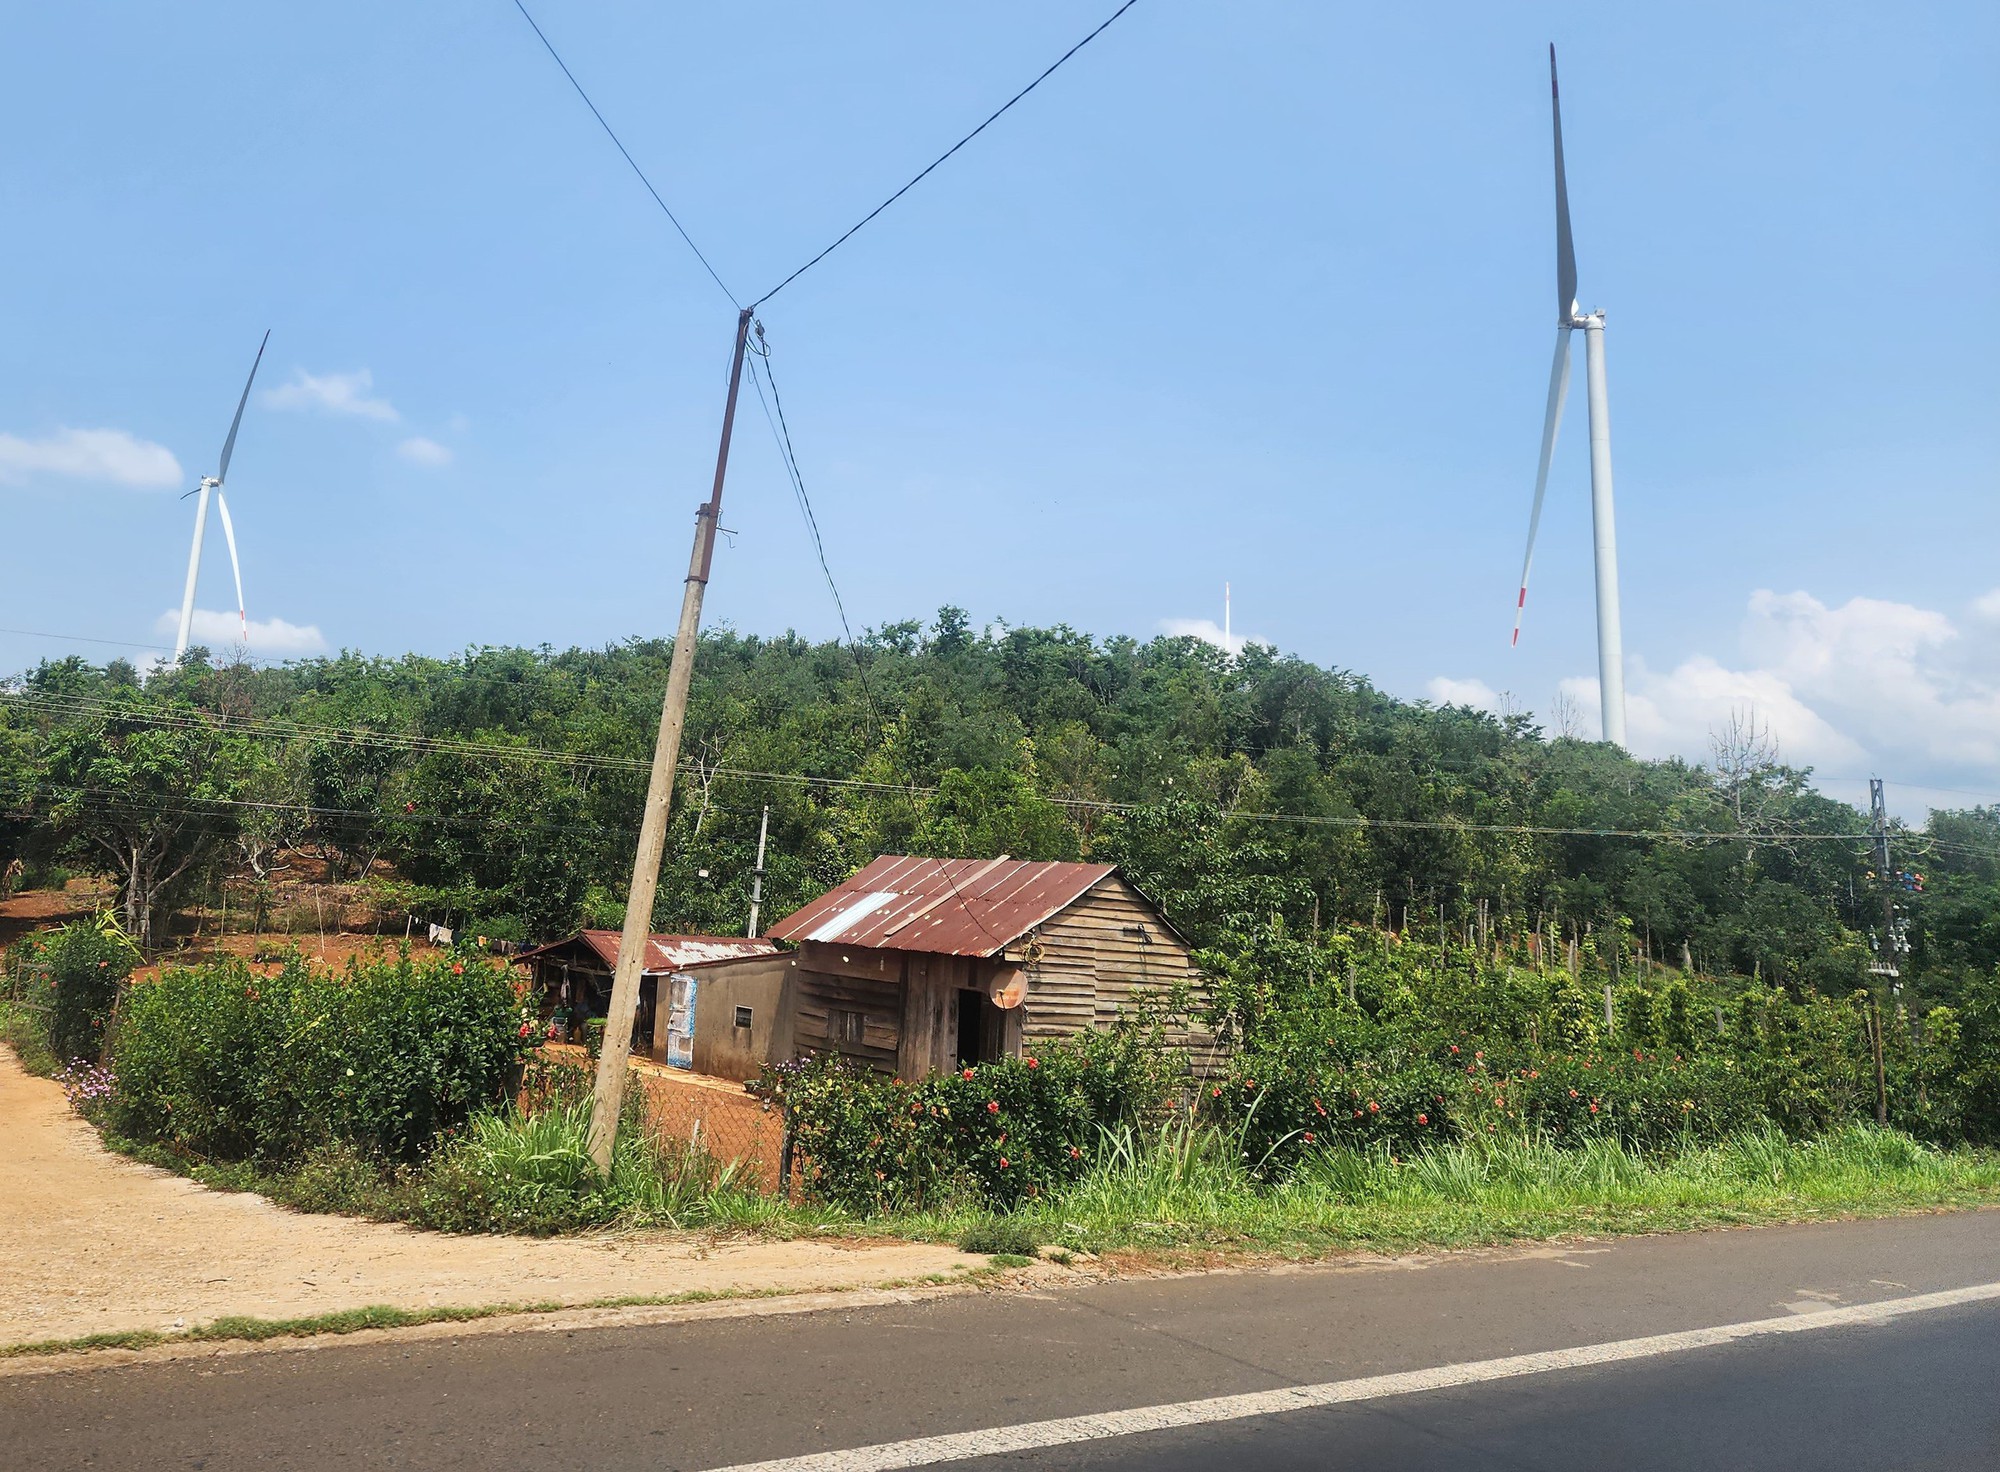 Ủy ban Kiểm tra Trung ương yêu cầu Đắk Nông cung cấp hồ sơ dự án điện gió, vì sao?- Ảnh 2.